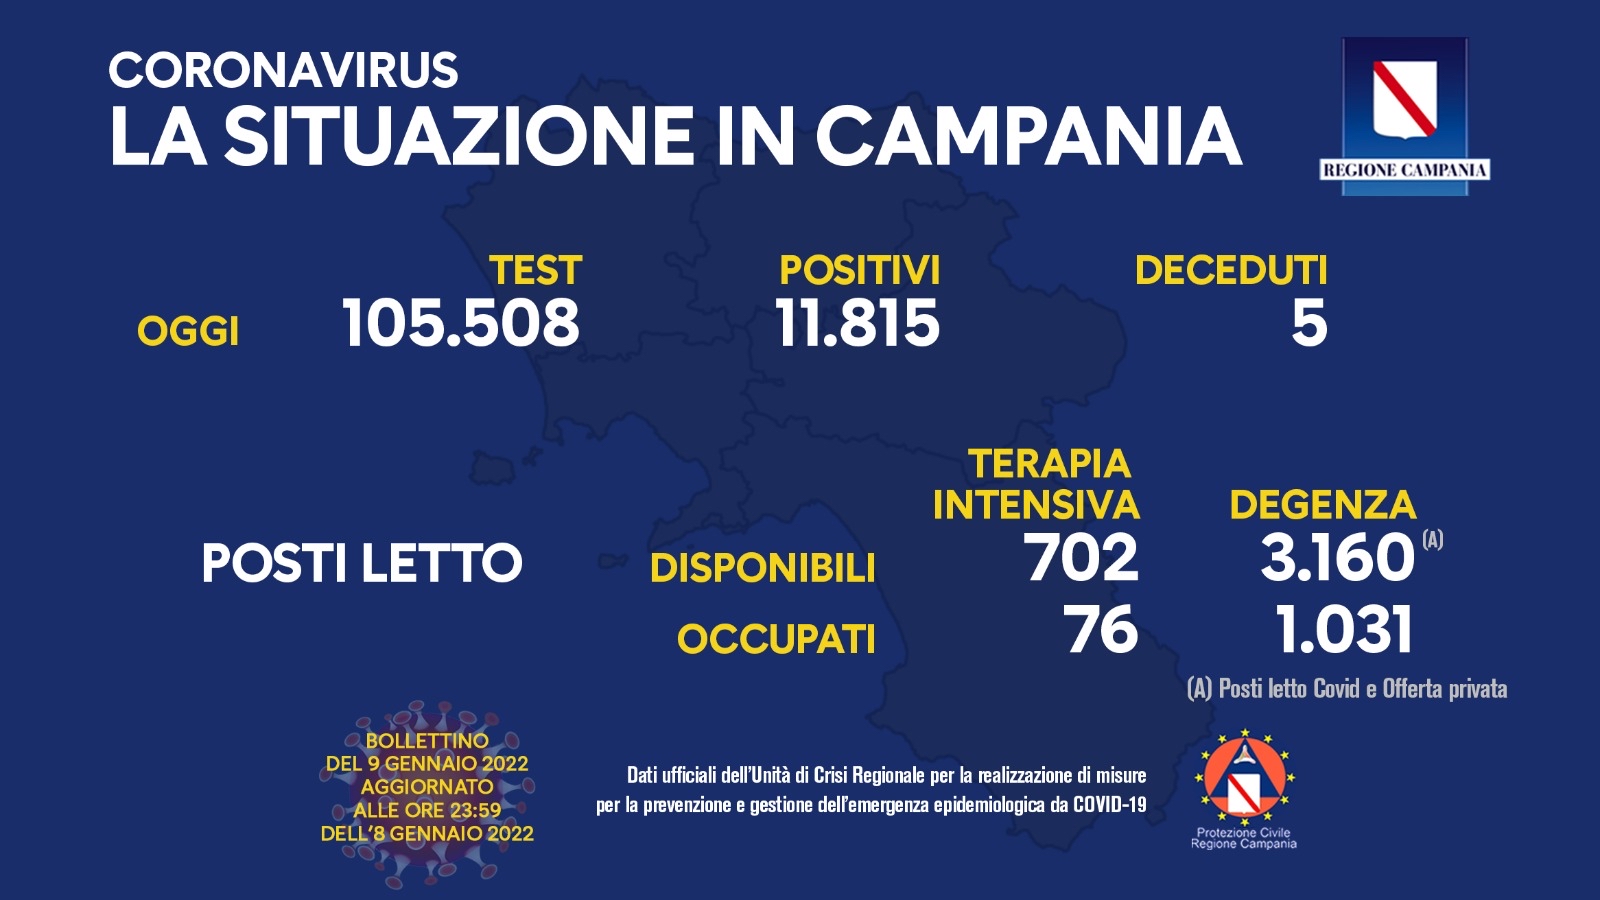 Regione Campania: Coronavirus, Unità di Crisi, Bollettino, 11.815 casi positivi, 5 decessi